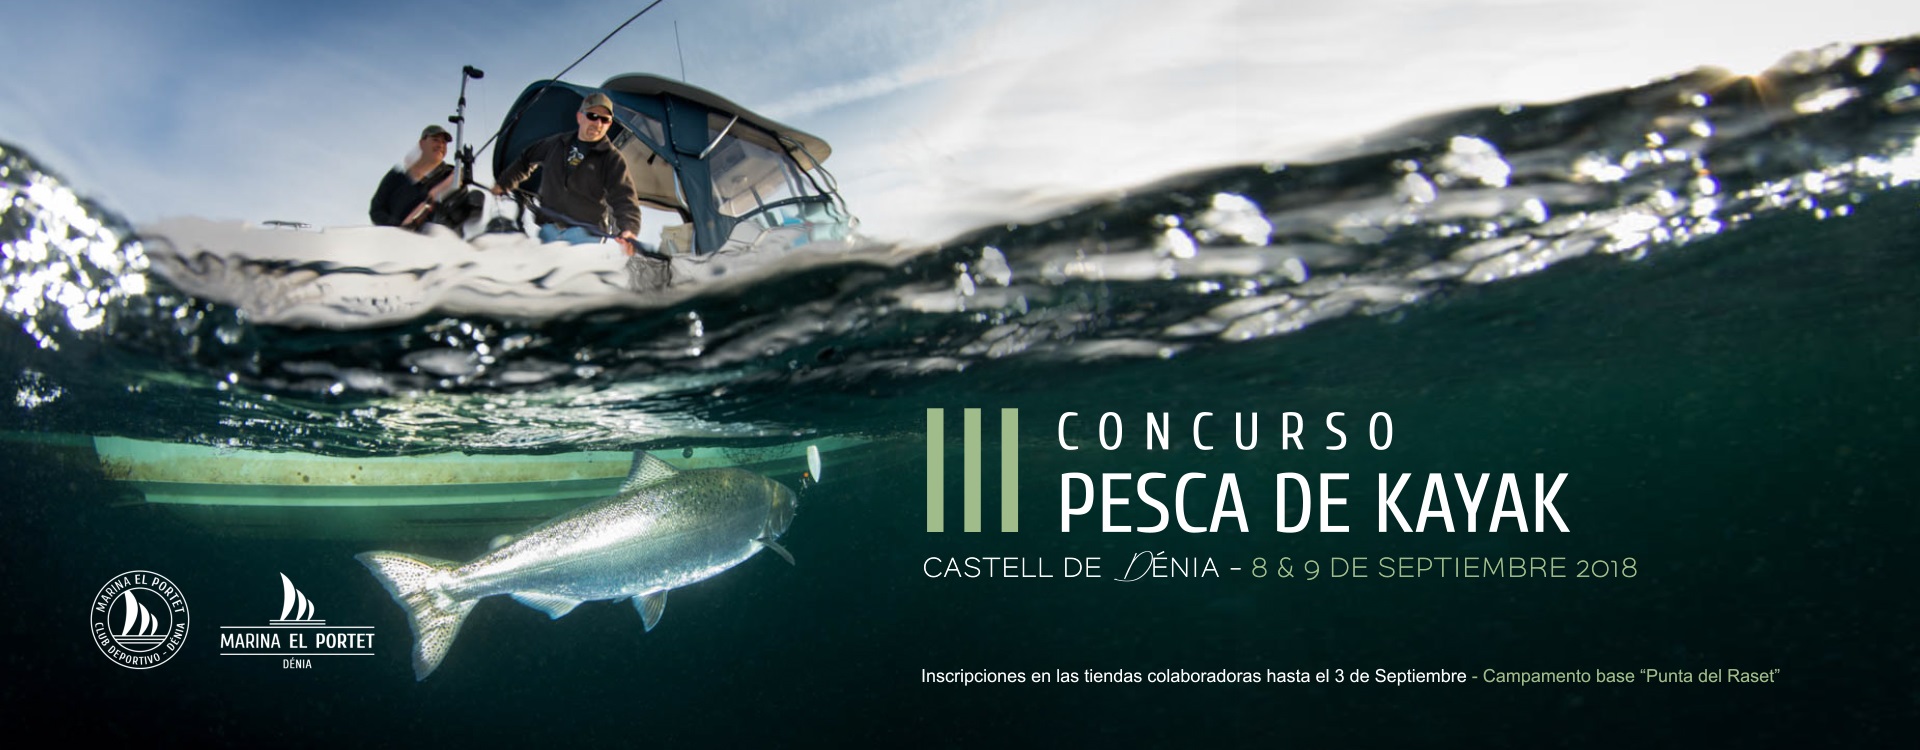 III Concurso Pesca Kayak Marina el Portet Dénia Perfect Pixel Publicidad Joaquin Molpeceres